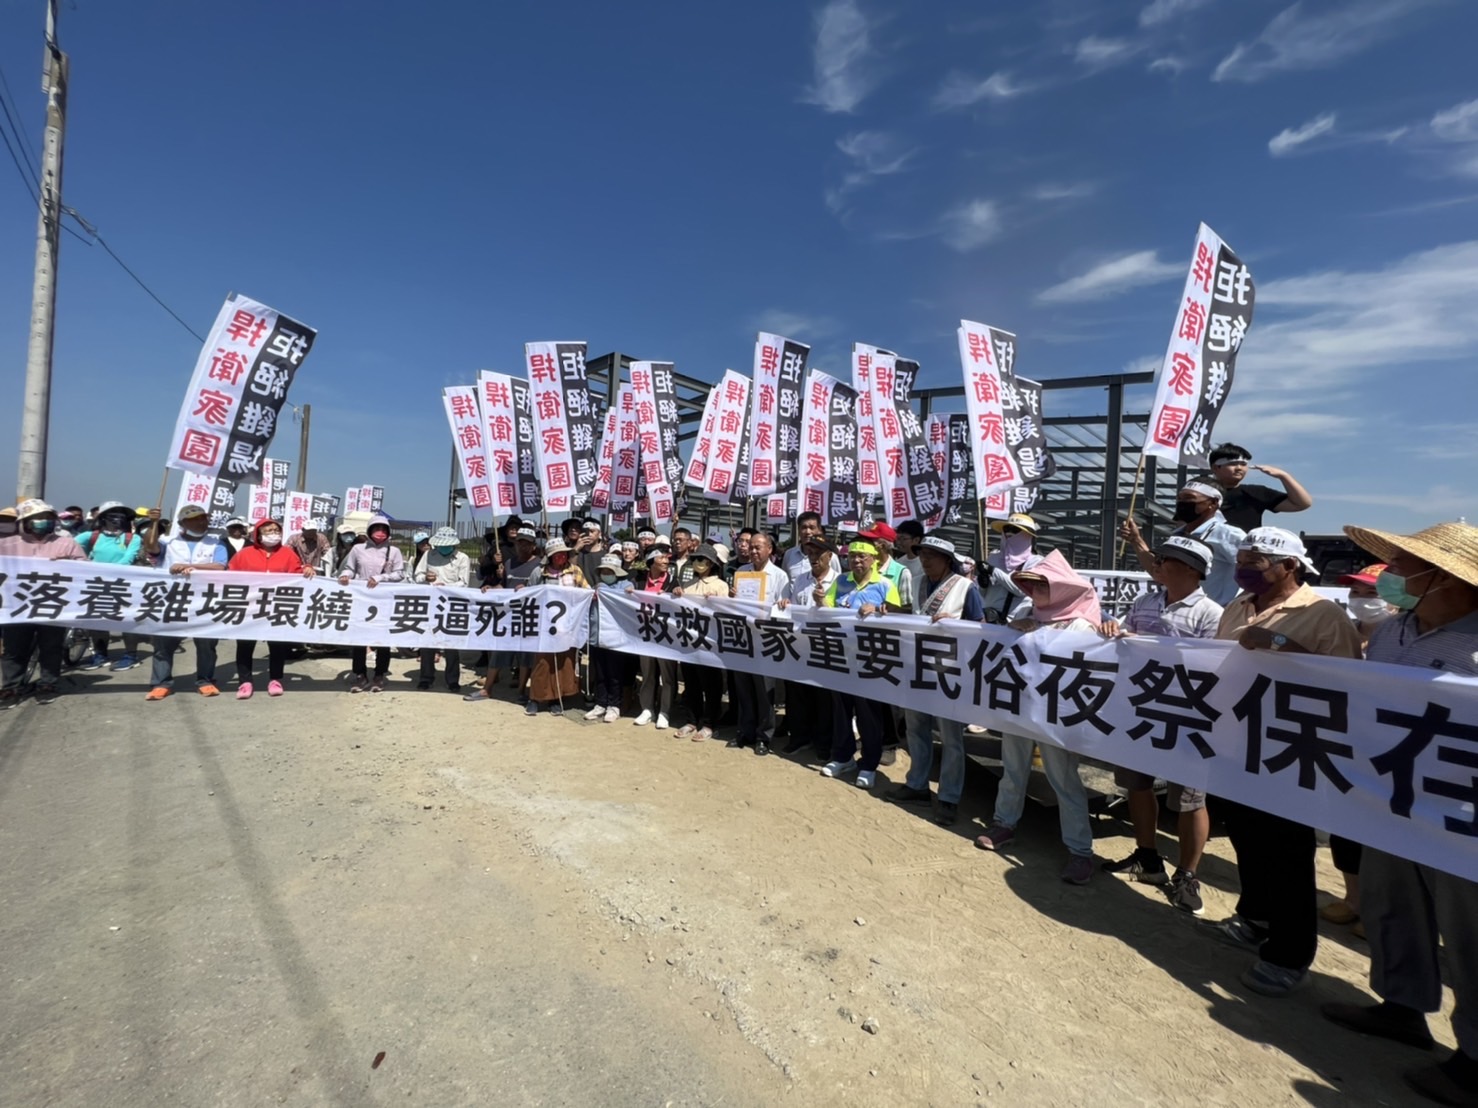 臺南市農業局回應東山區東河里居民反對設置畜牧場案